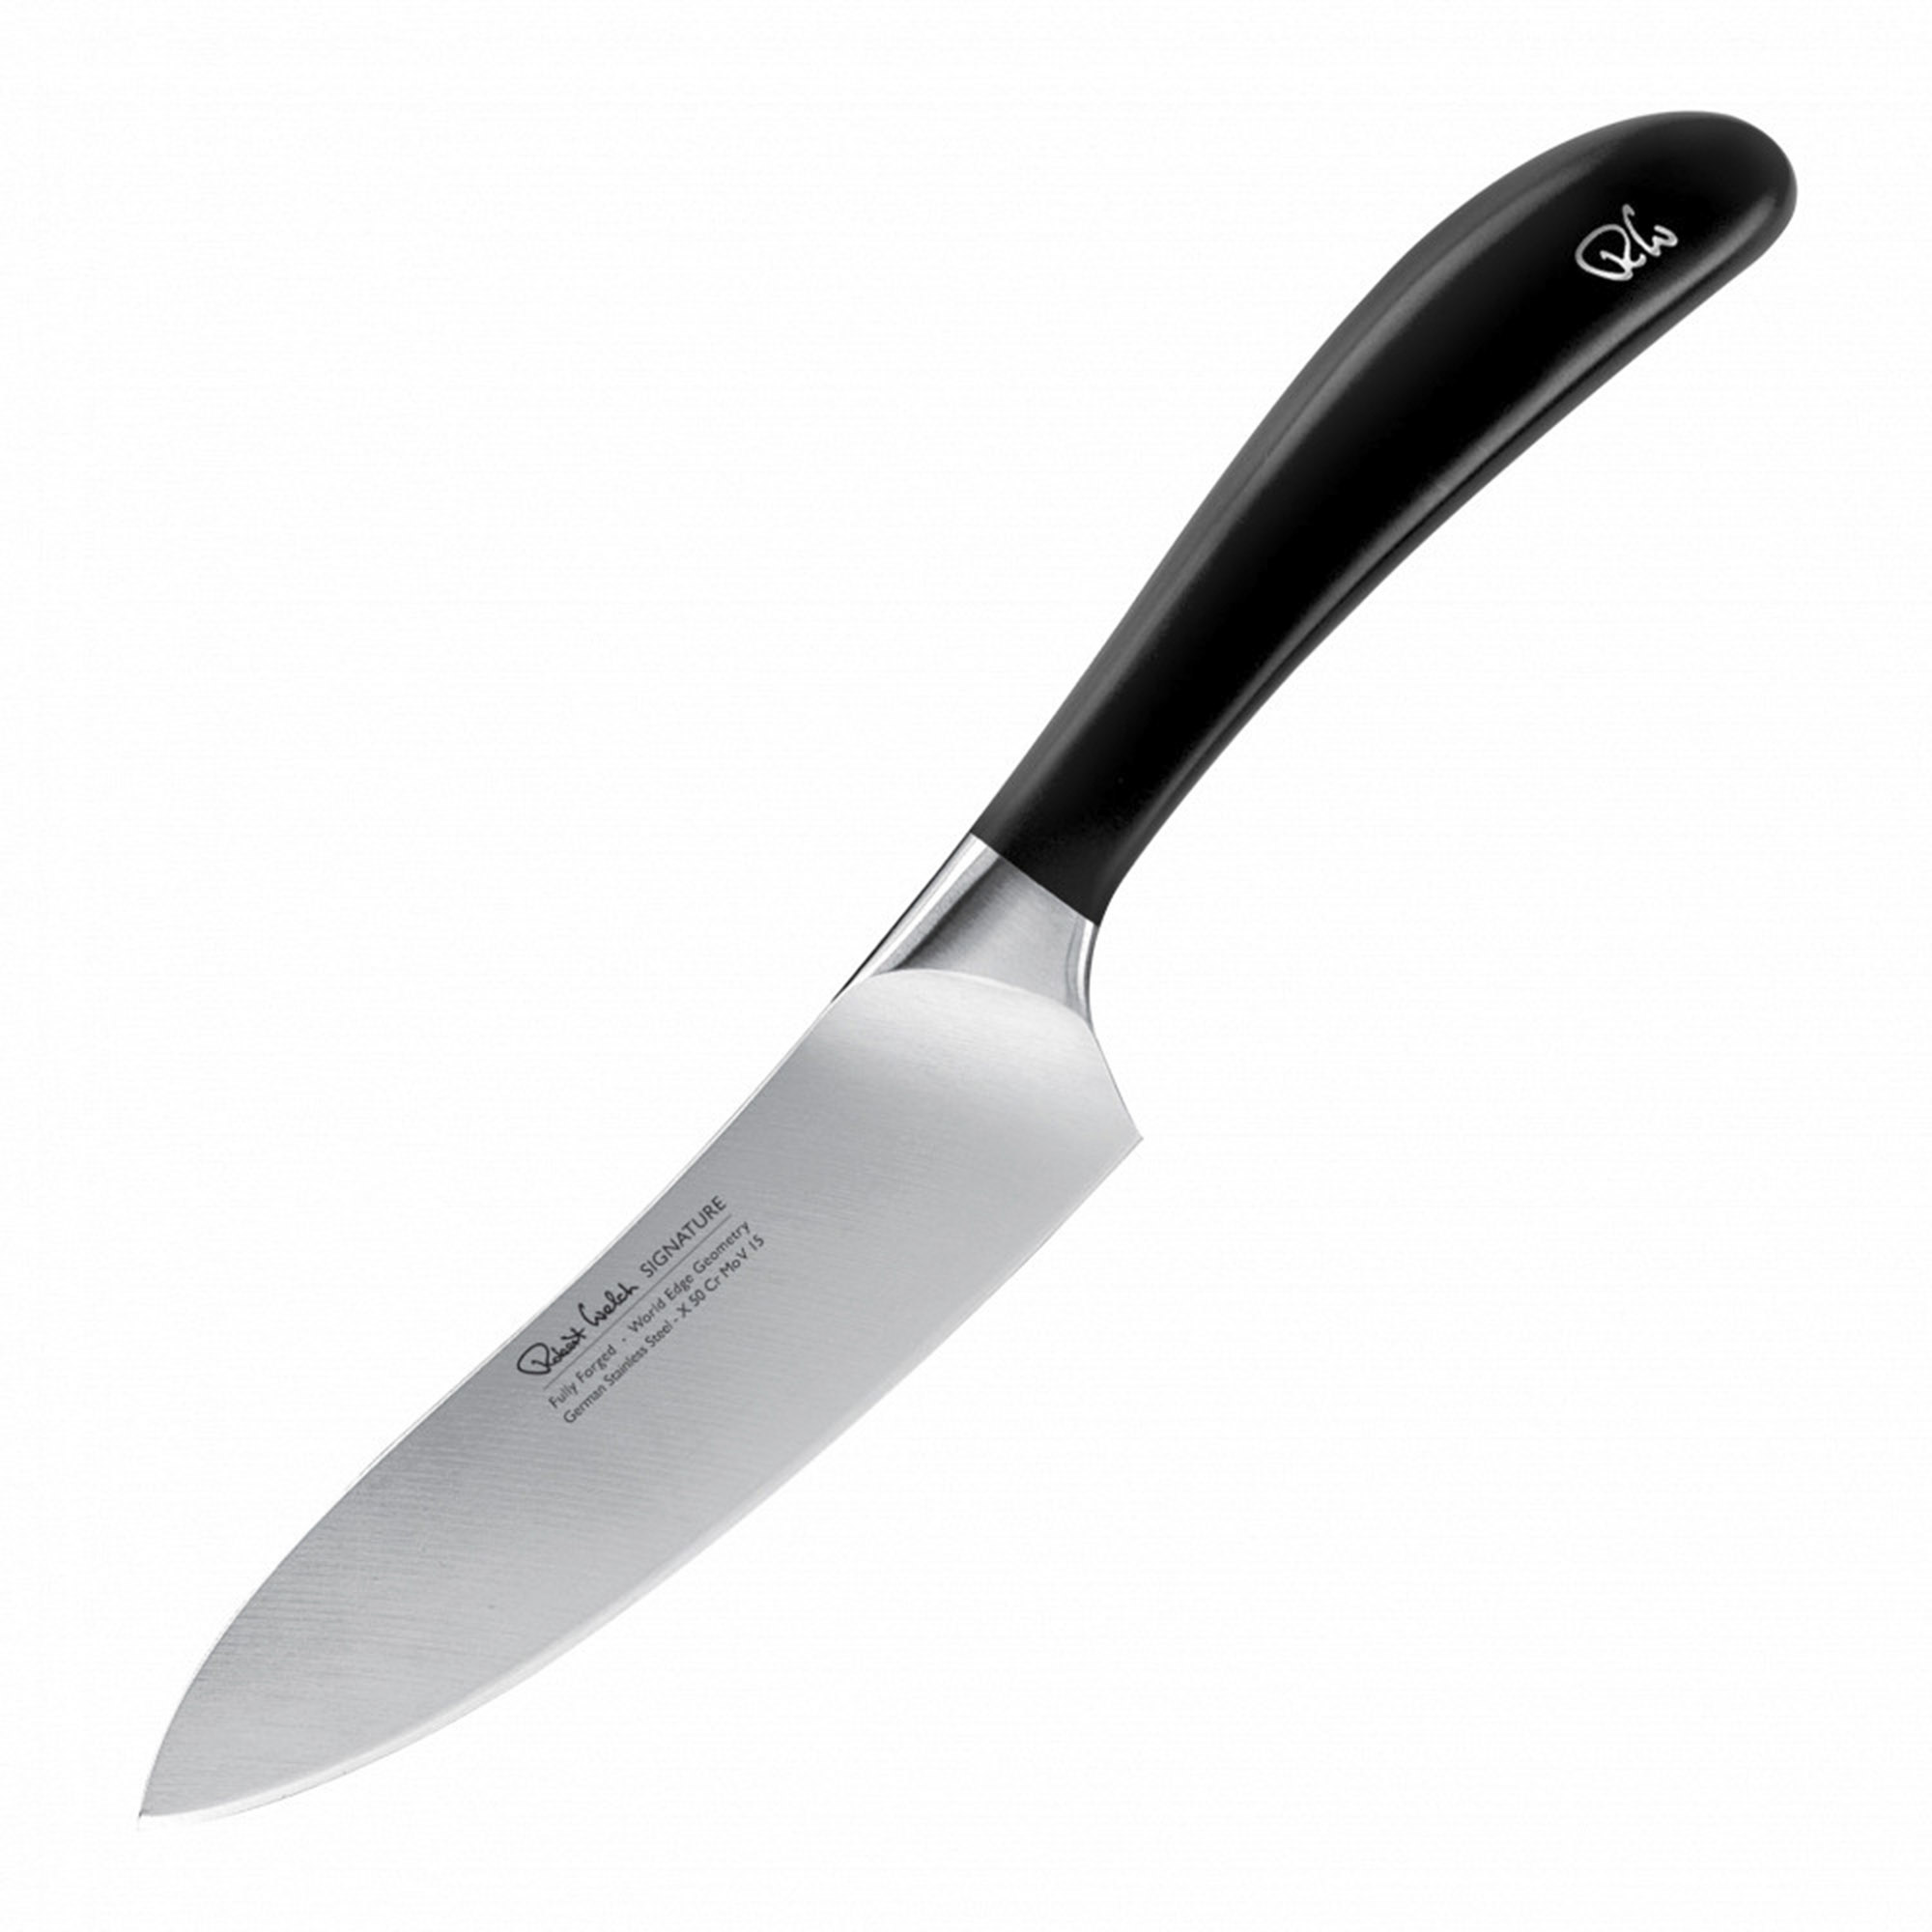 Поварской кухонный шеф-нож Robert Welch Signature 14 см